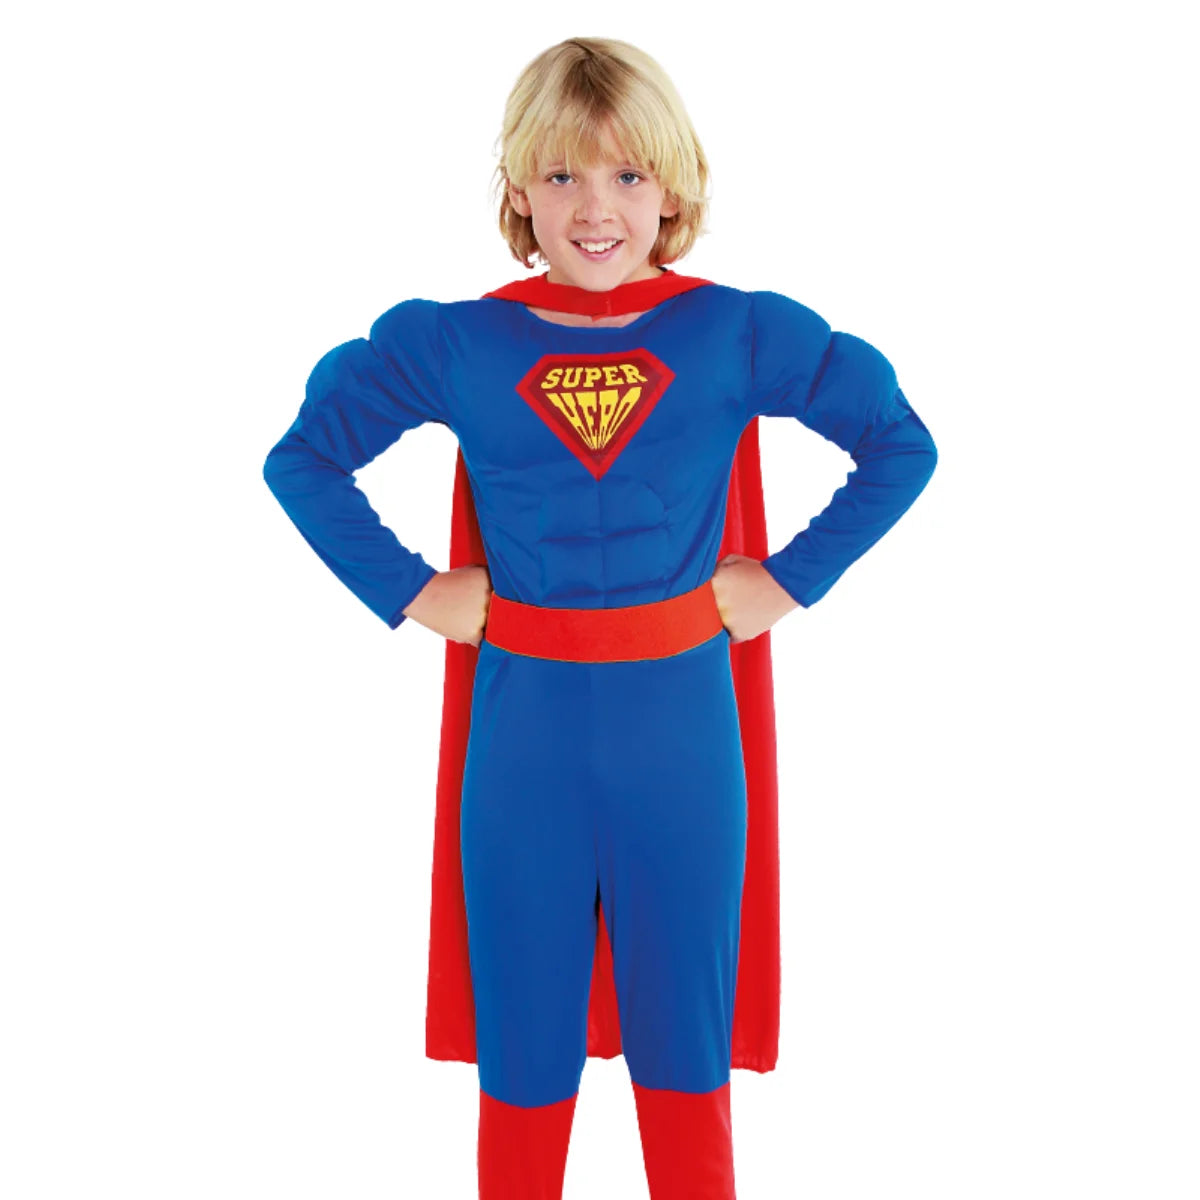 Disfraz Super Héroe "Super Hero" para Niños - Traje de Carnaval Infantil para Fiestas - Disfraz de Super Hombre Musculoso